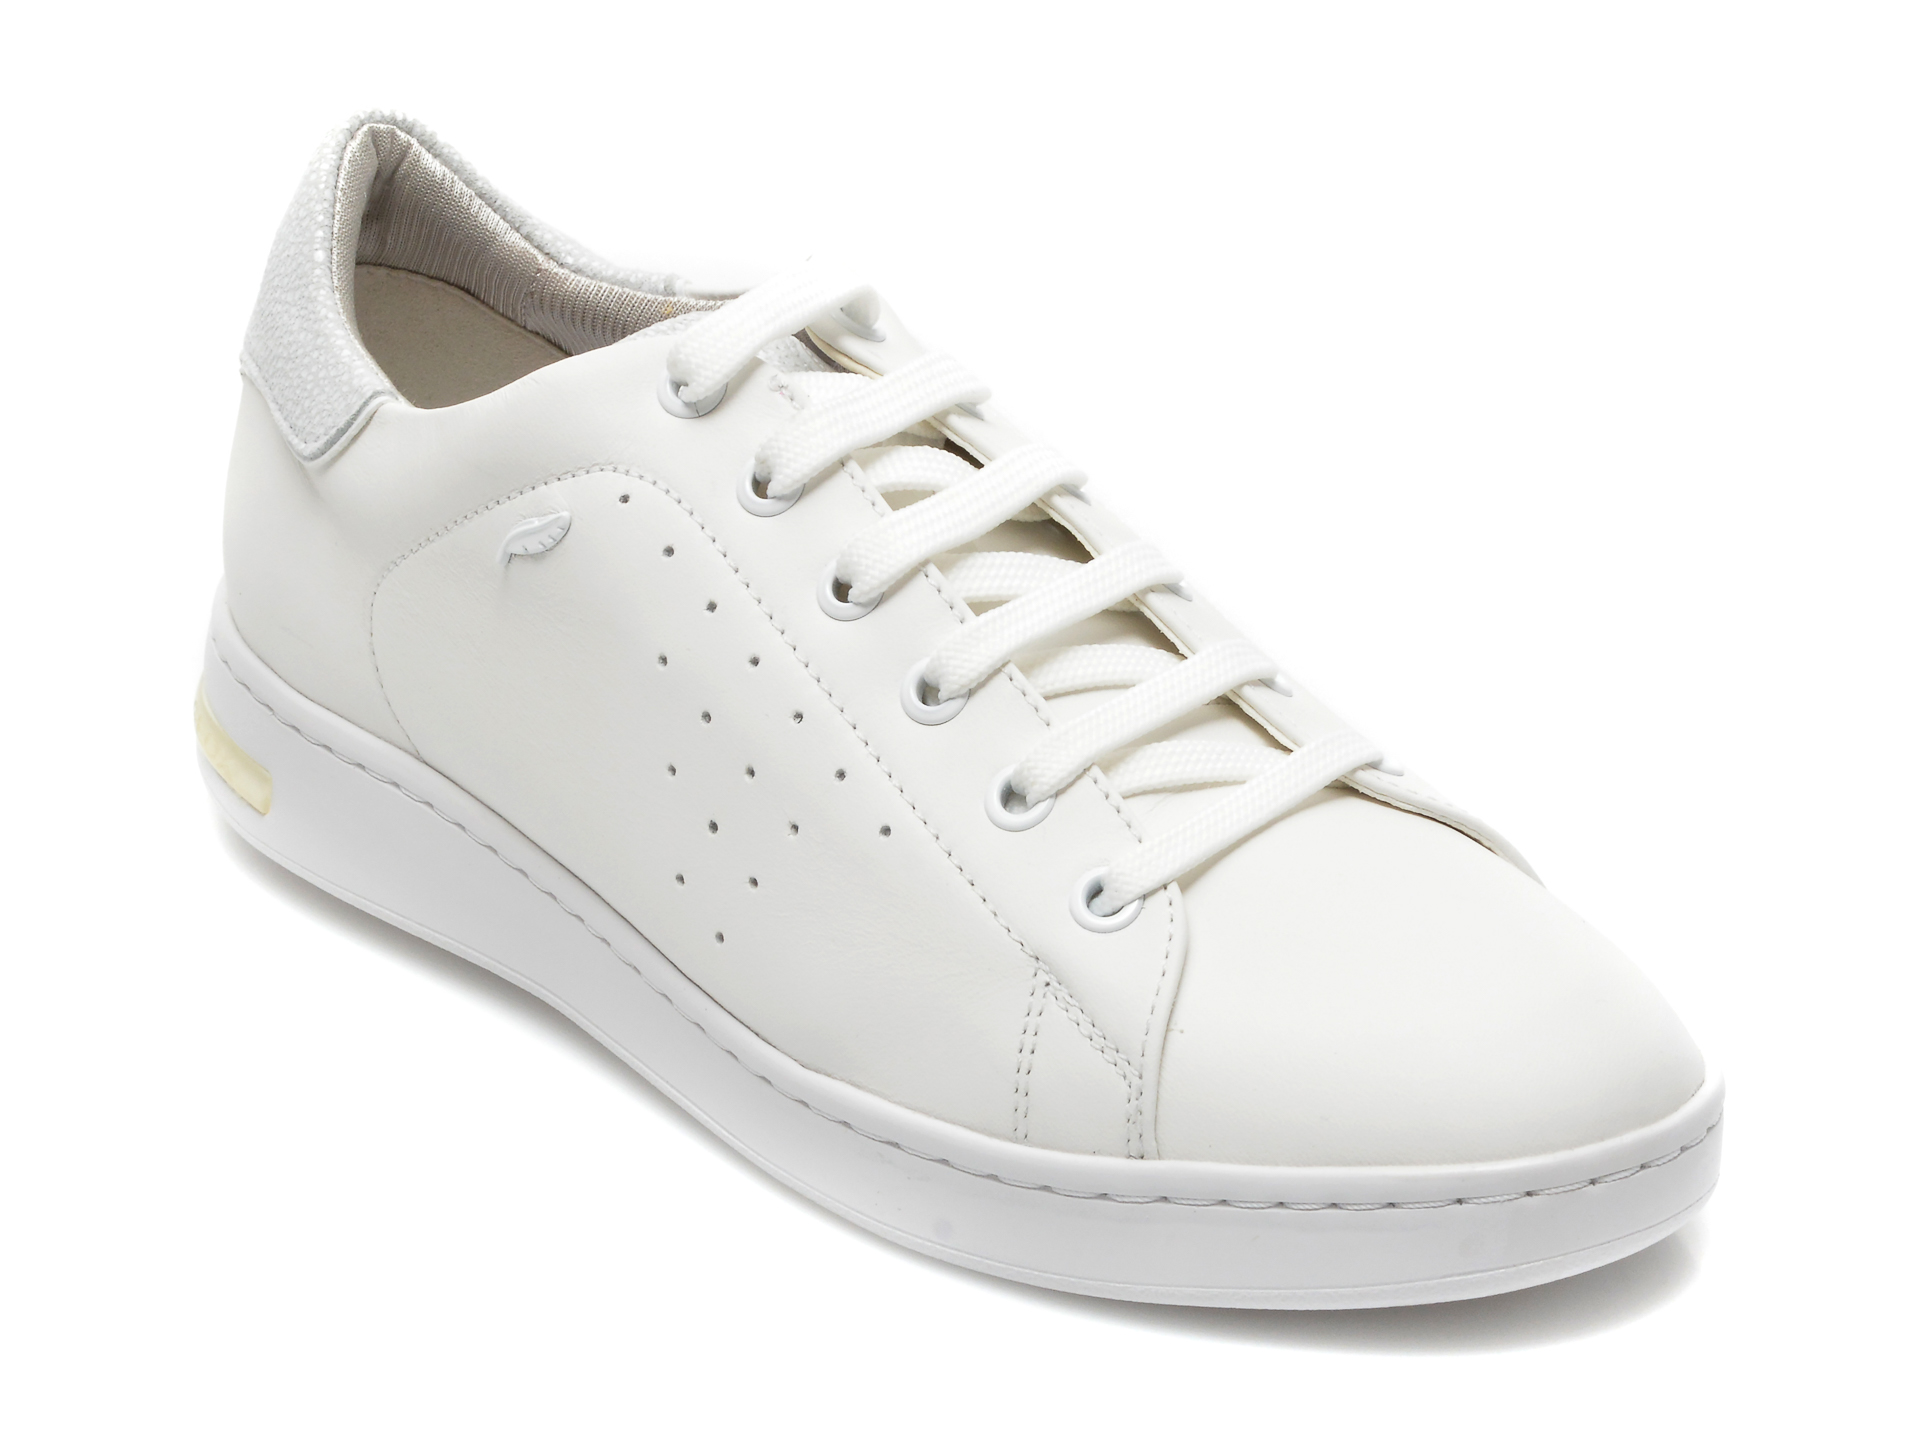 Pantofi sport GEOX albi, D621BA, din piele naturala Geox imagine noua